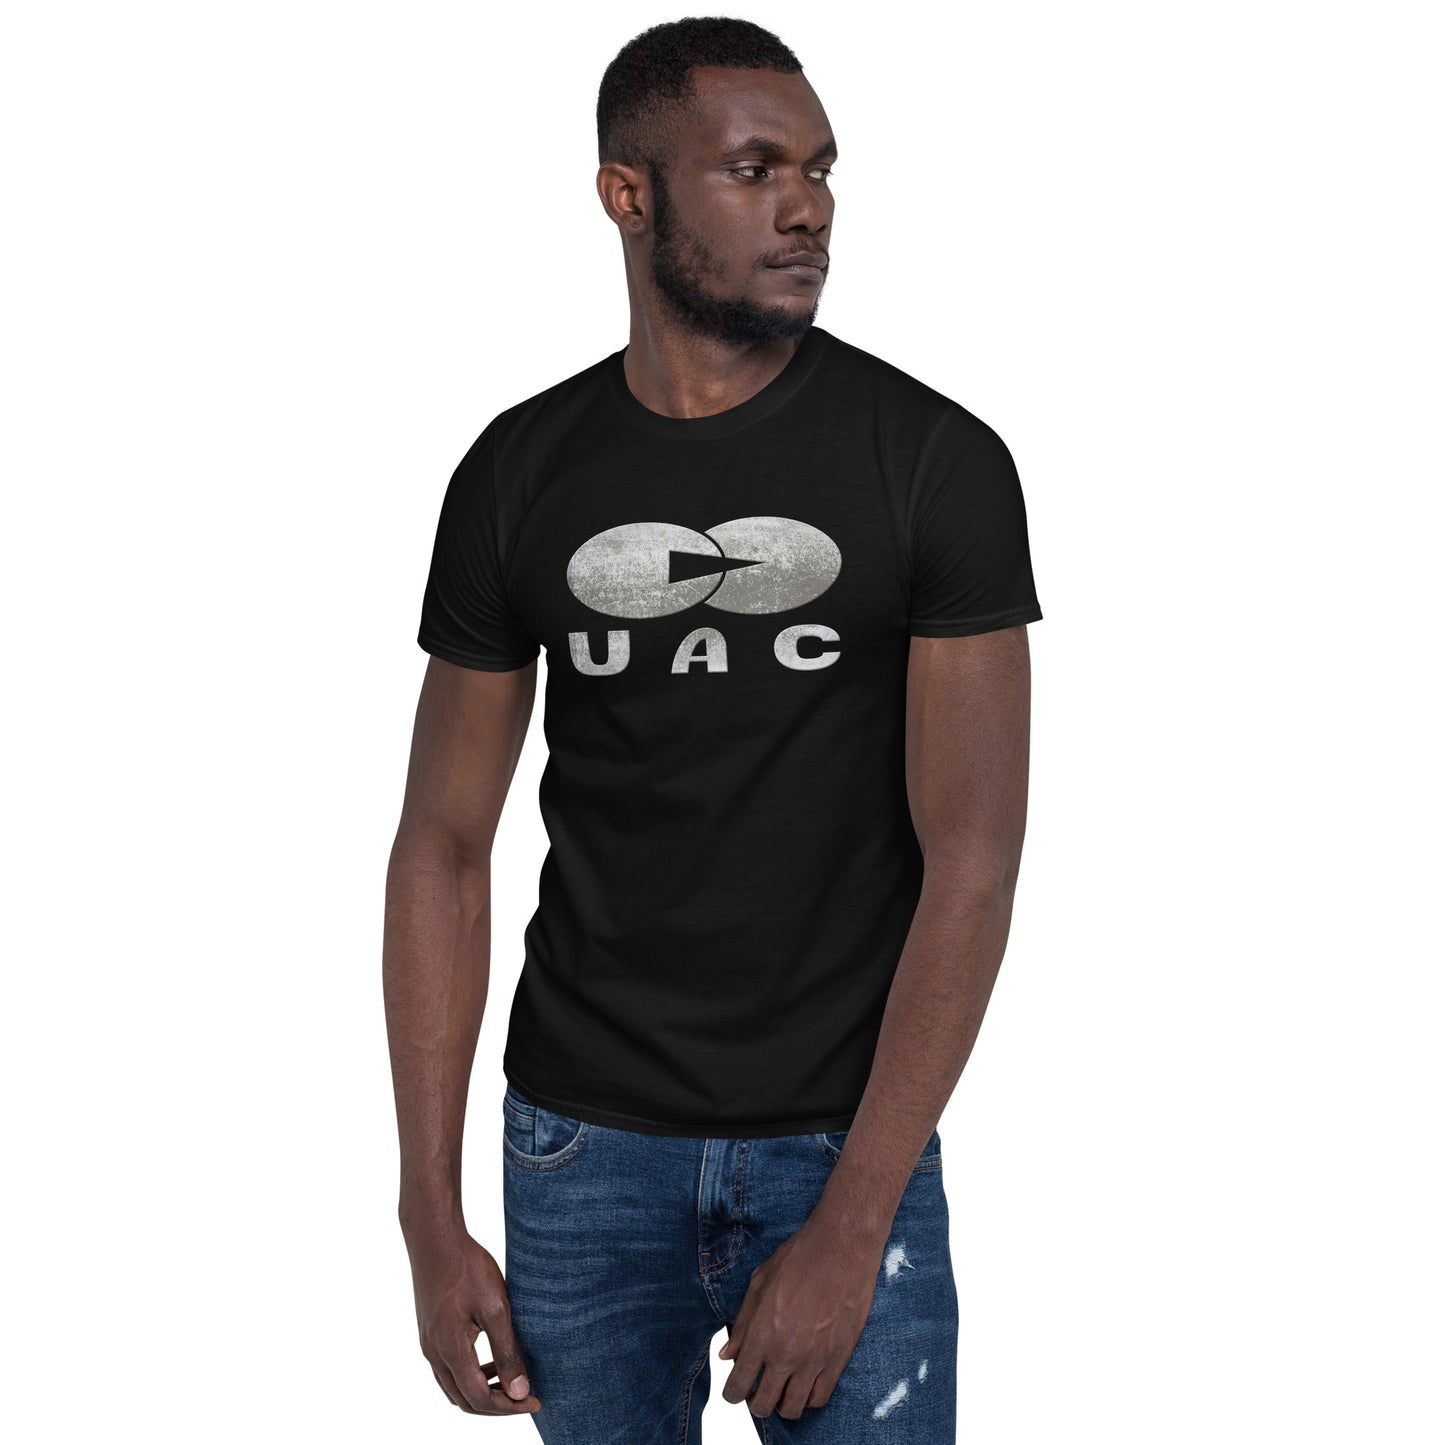 UAC Short-Sleeve Unisex T-Shirt